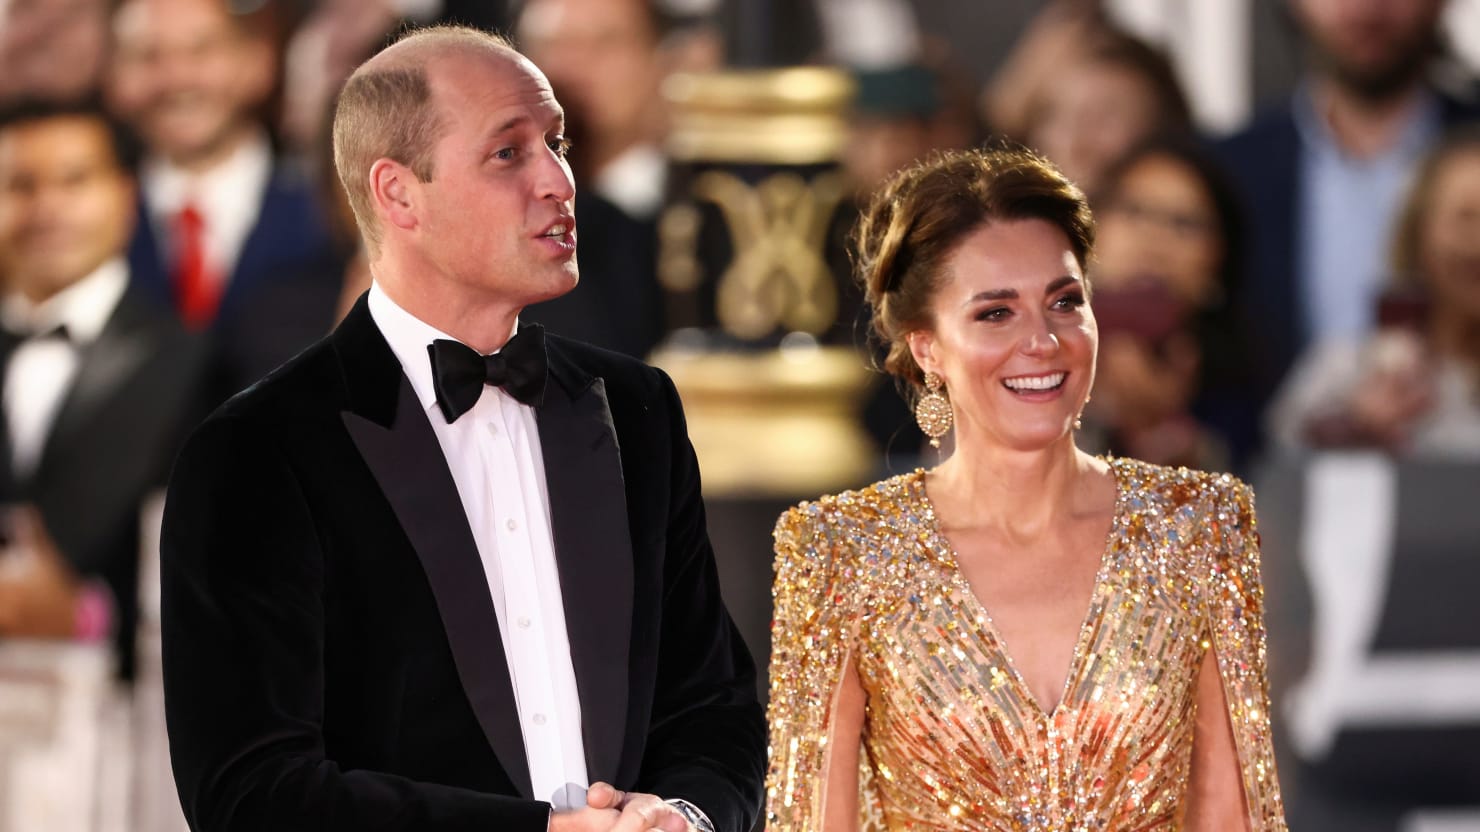 La famille royale prévoit un voyage éclair pour vendre les Windsors au monde